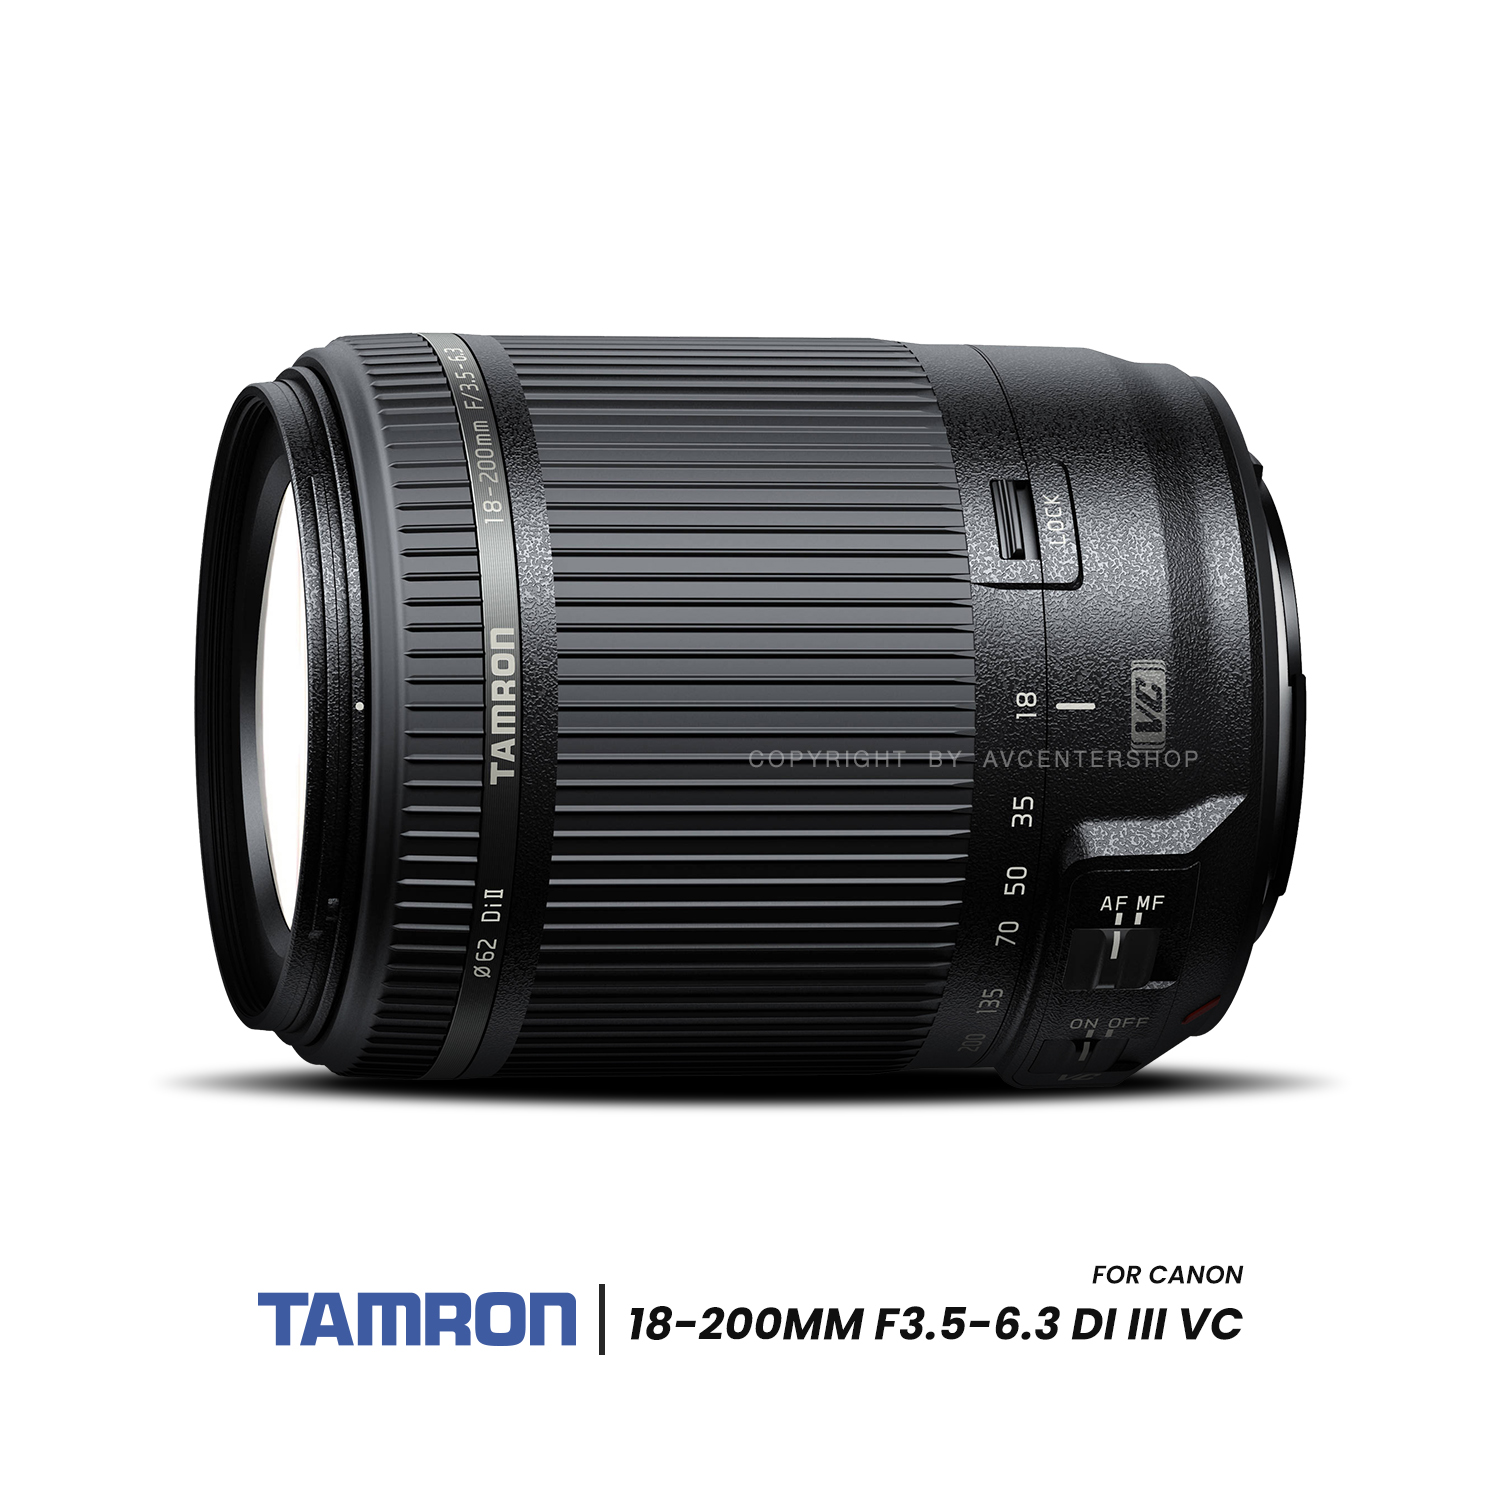 Tamron Lens 18-200mm f/3.5-6.3 Di III VC